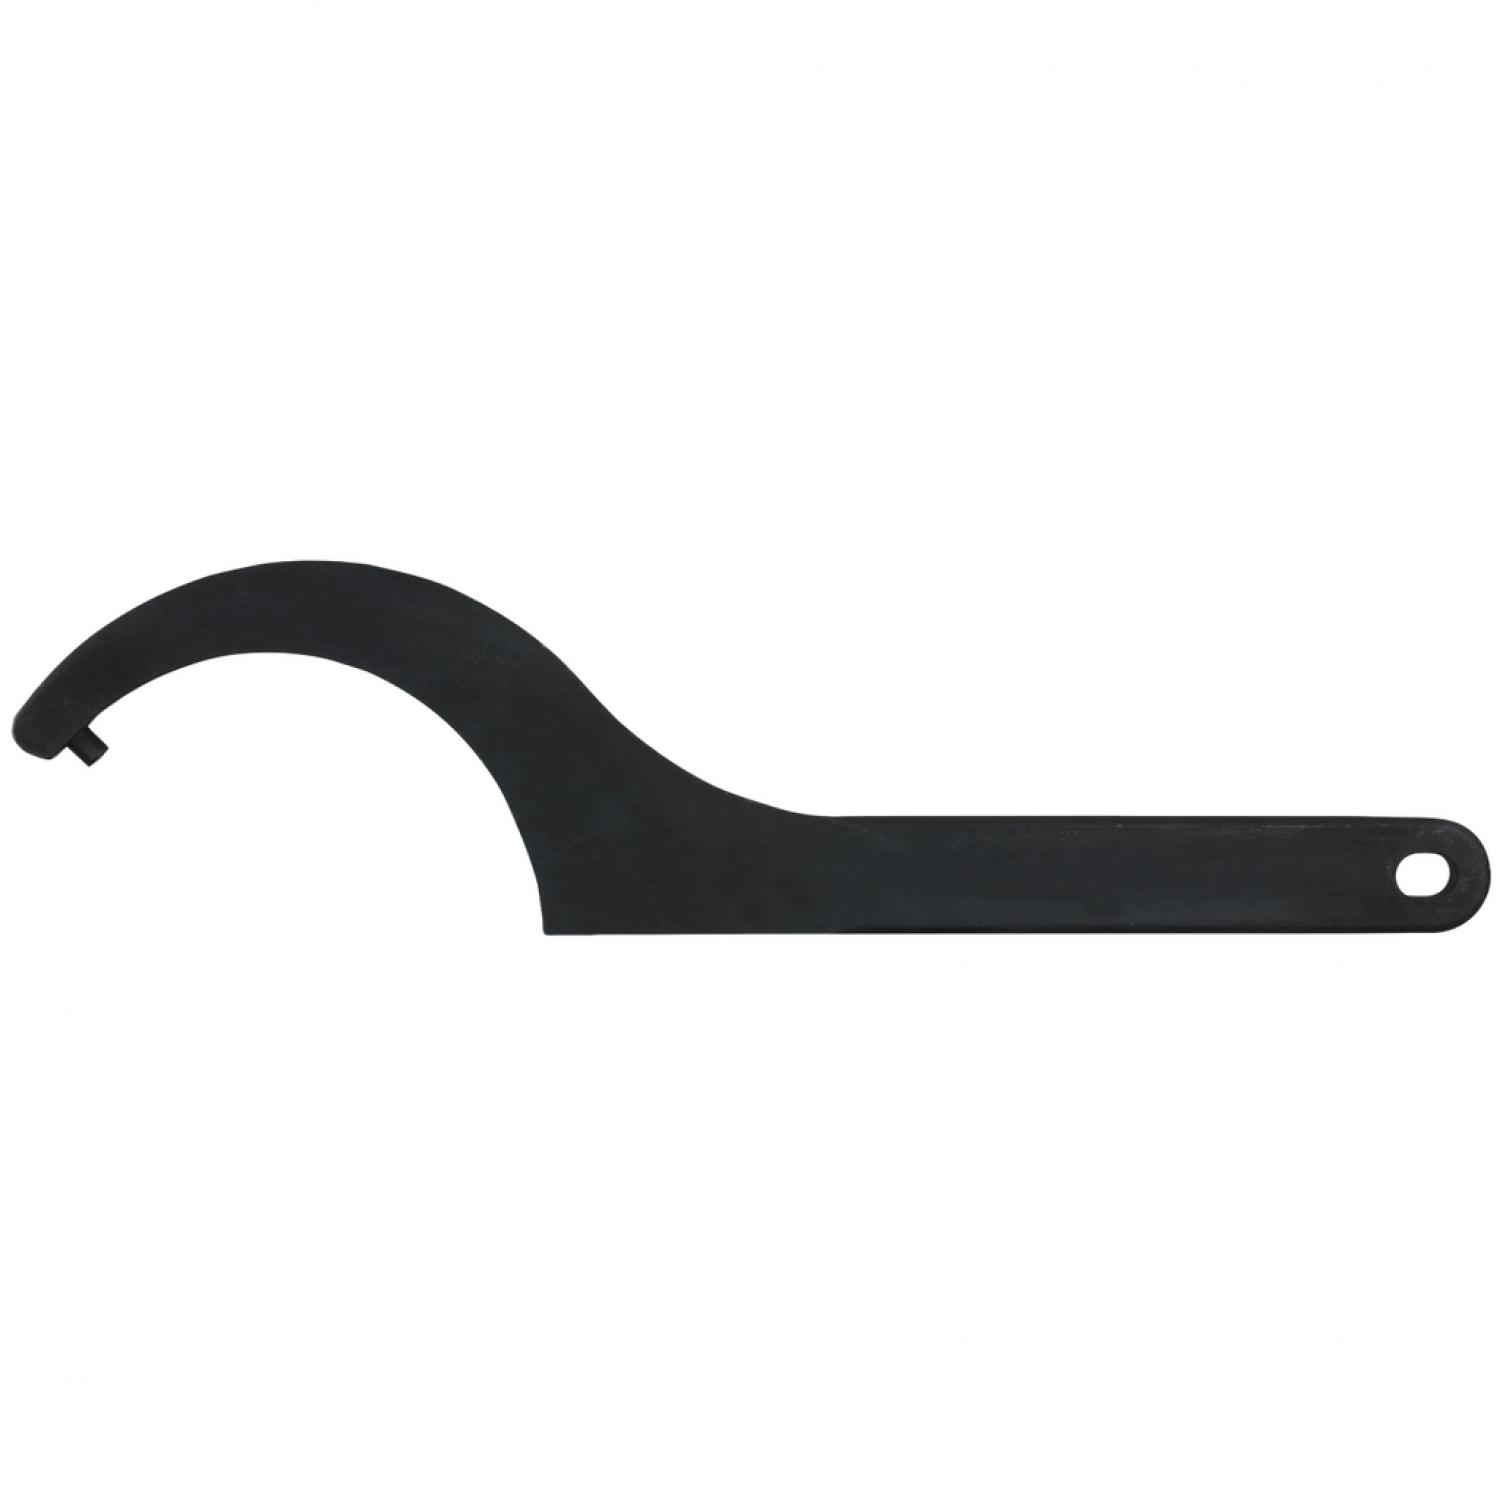 Прочный крючковый ключ с цапфами, 52-55 мм